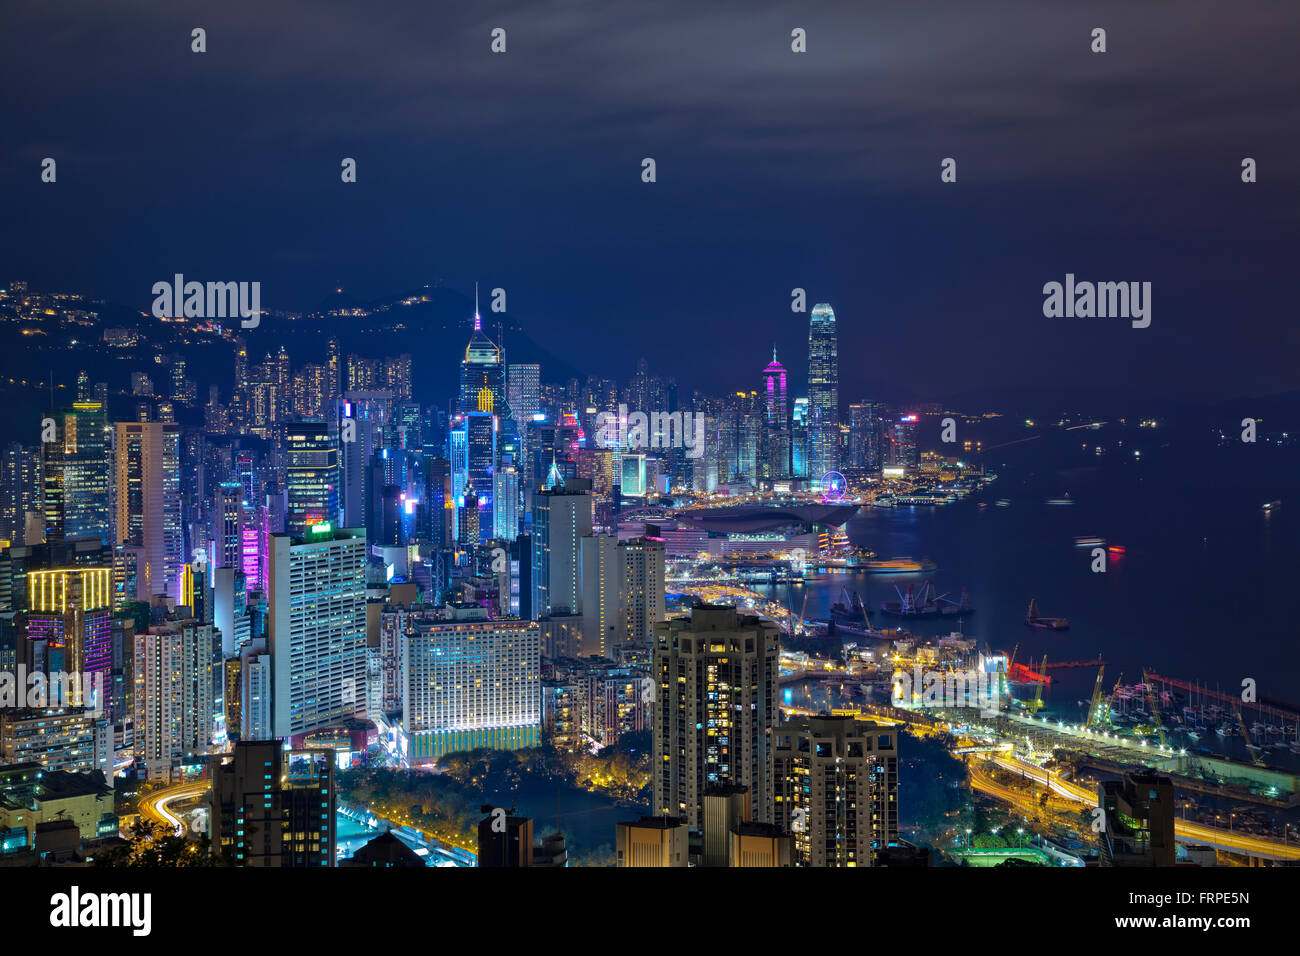 Hong Kong. Image of Hong Kong skyline at night. Stock Photo